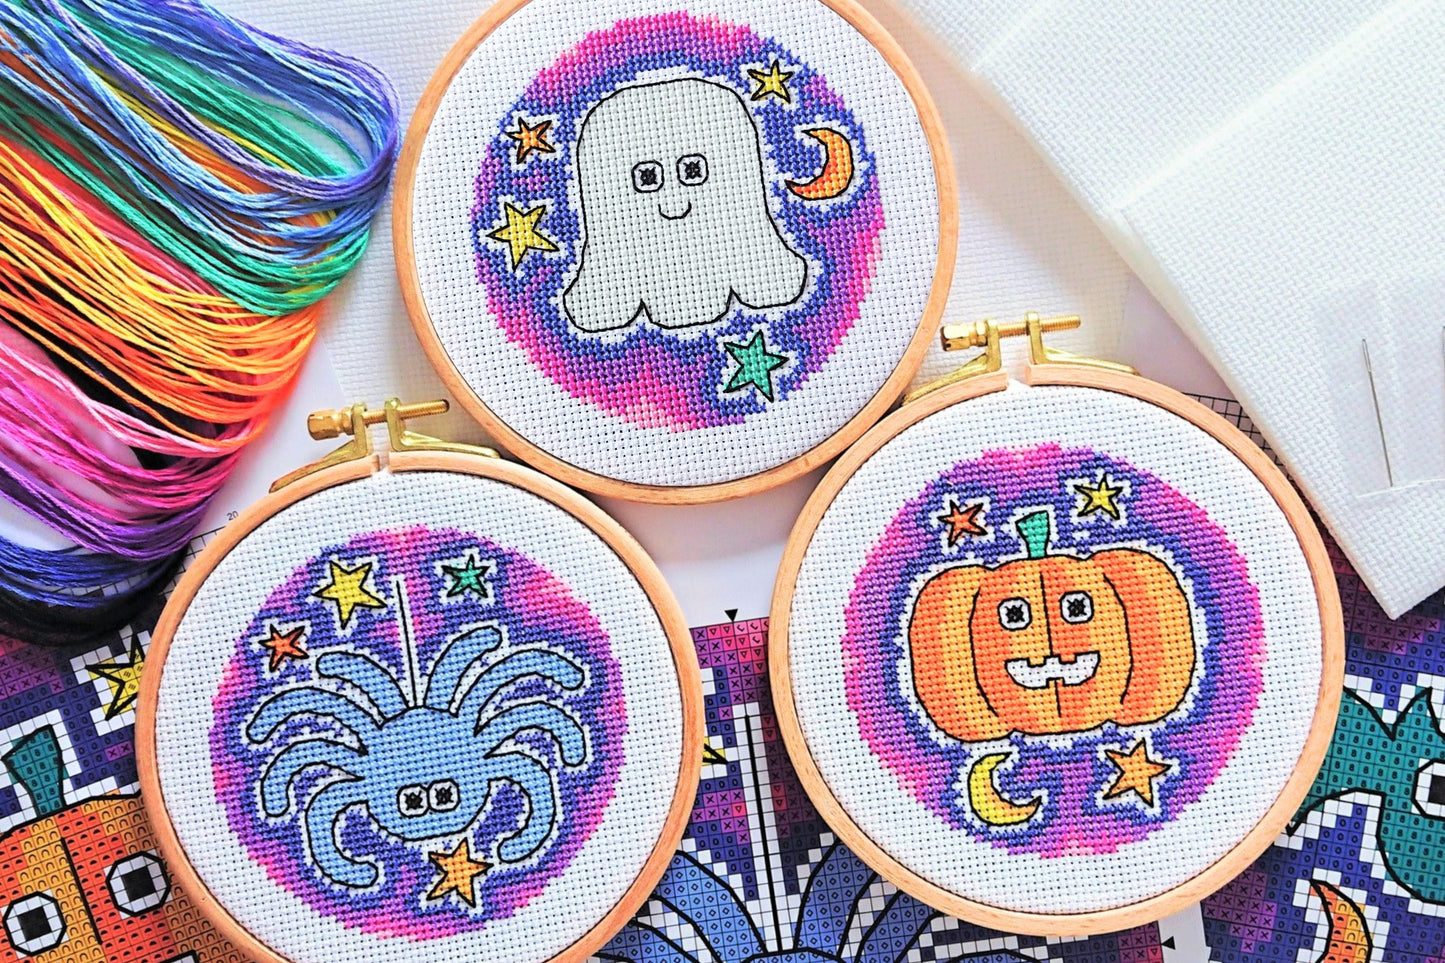 Halloween Trio Pumpkin, Ghost, Spider Cross Stitch Kit